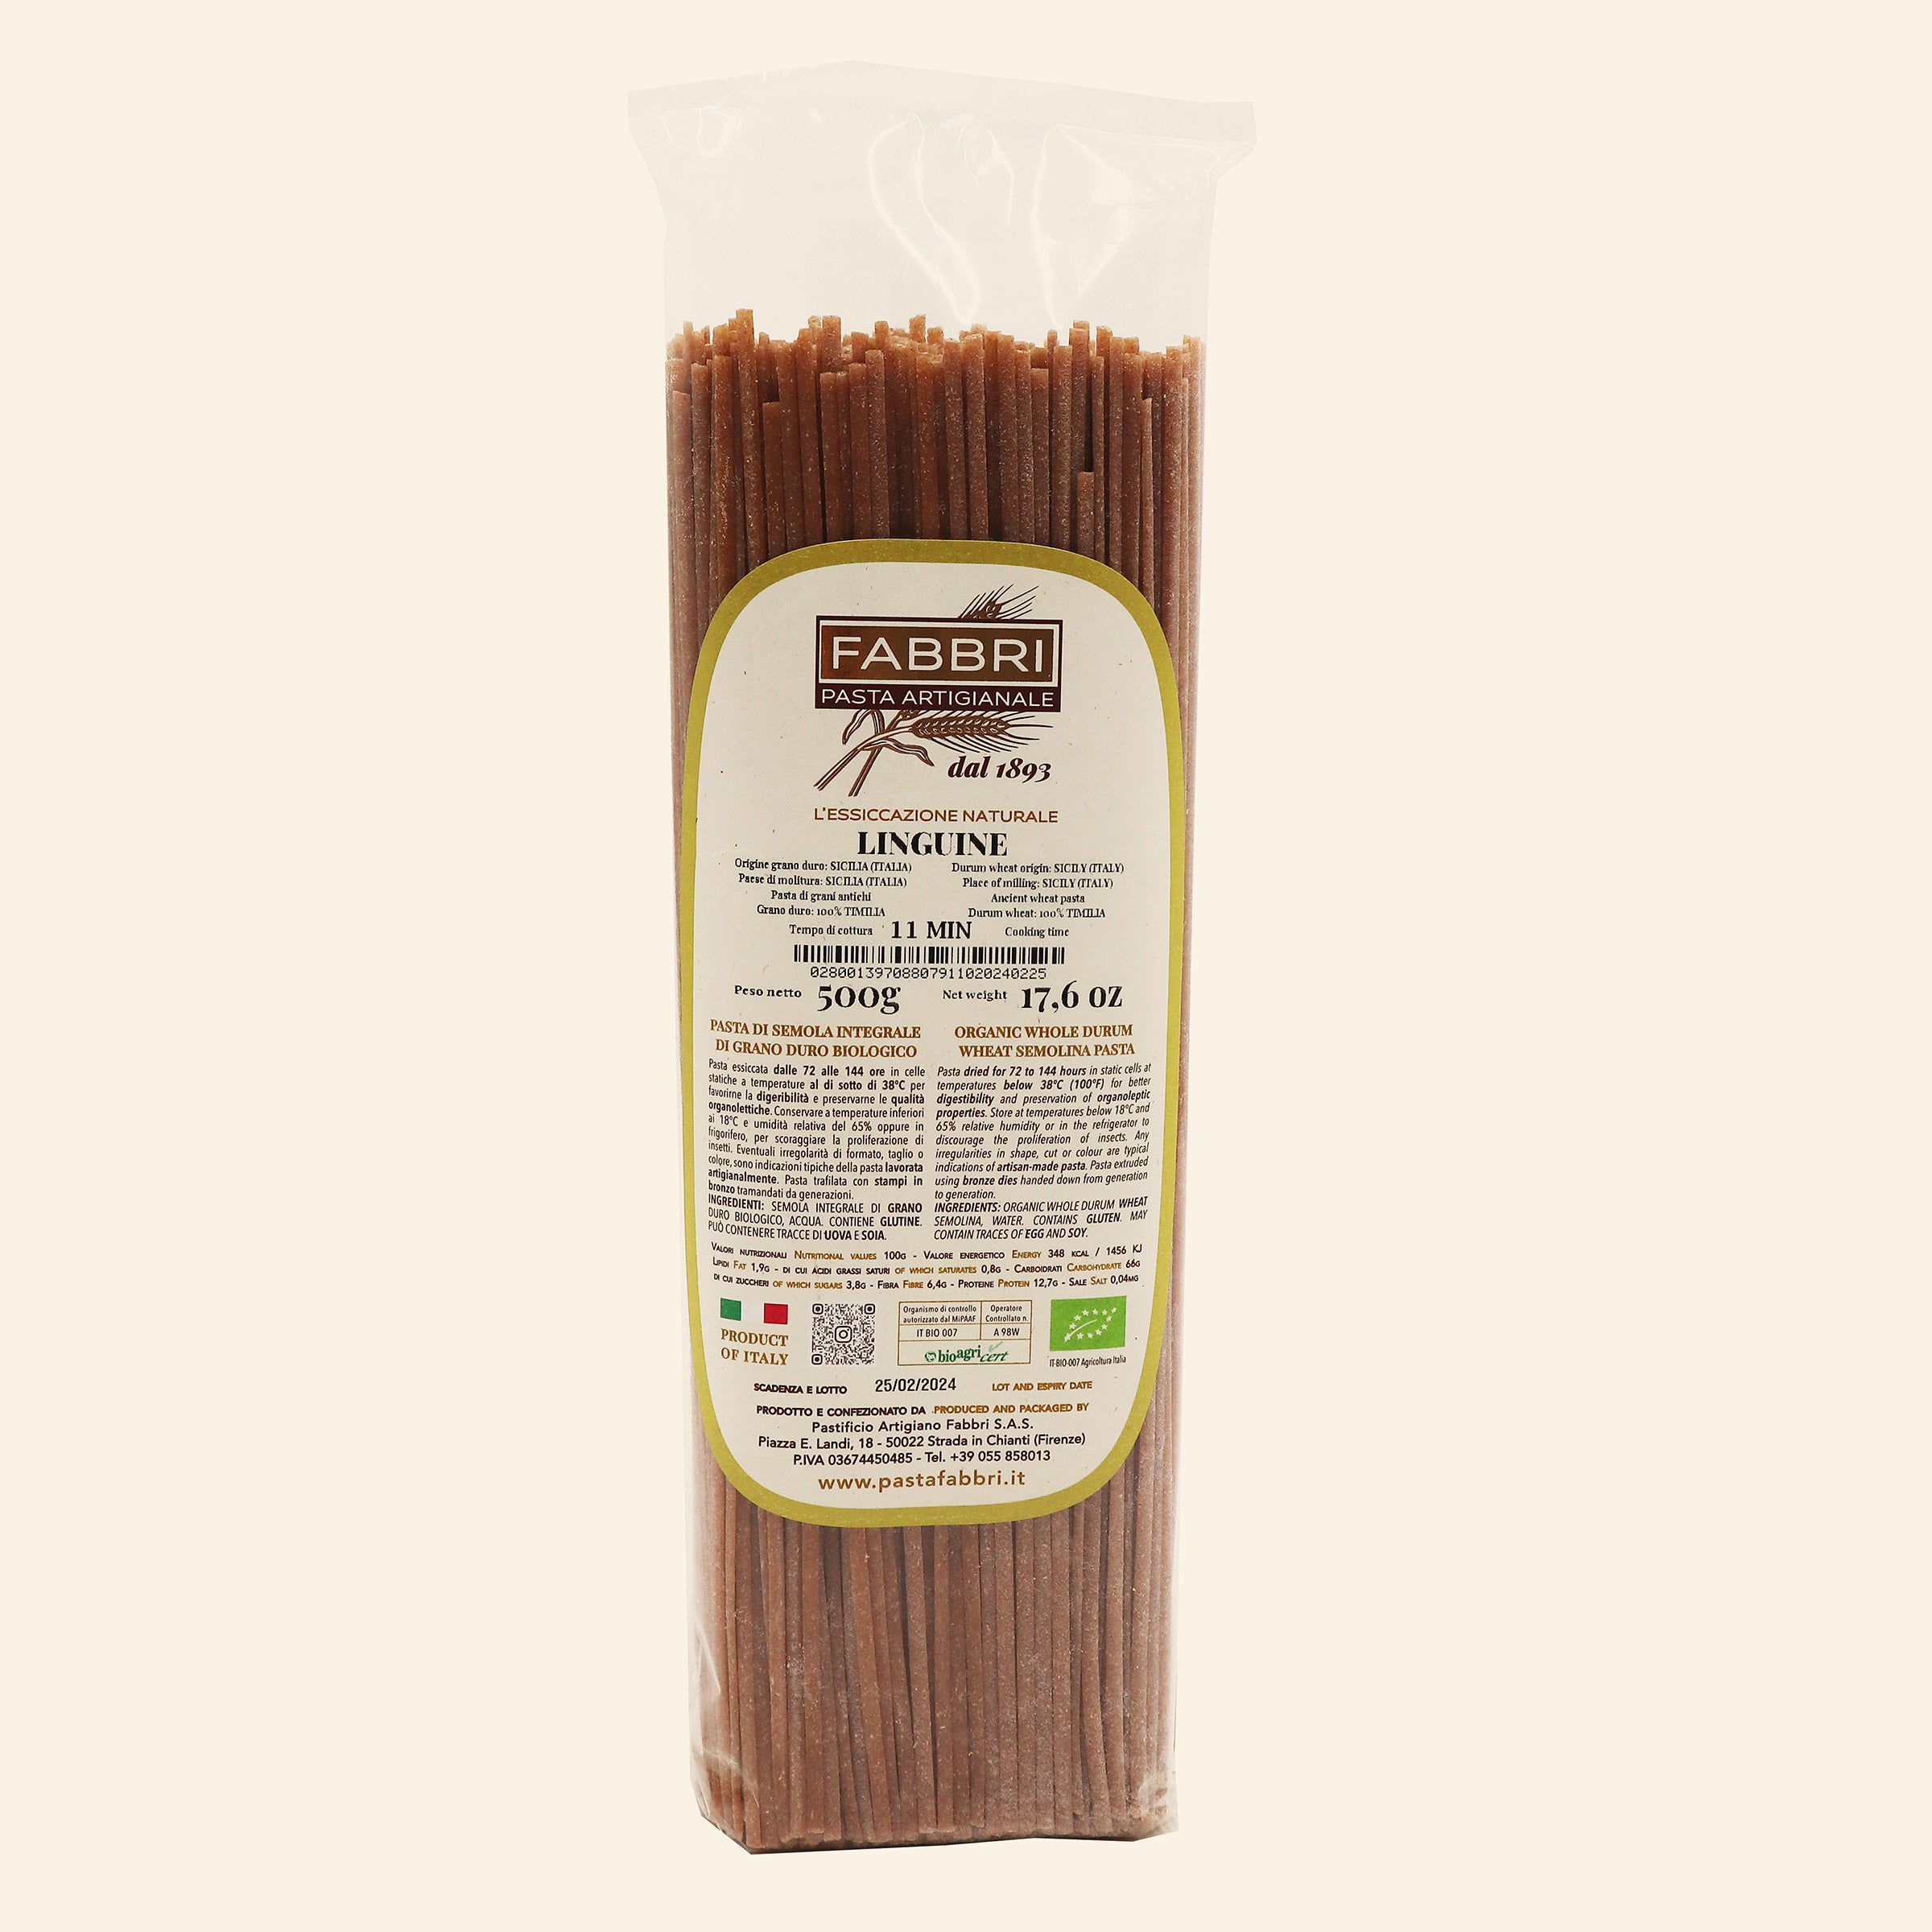 Organic whole semolina Linguine 100% Timilia wheat